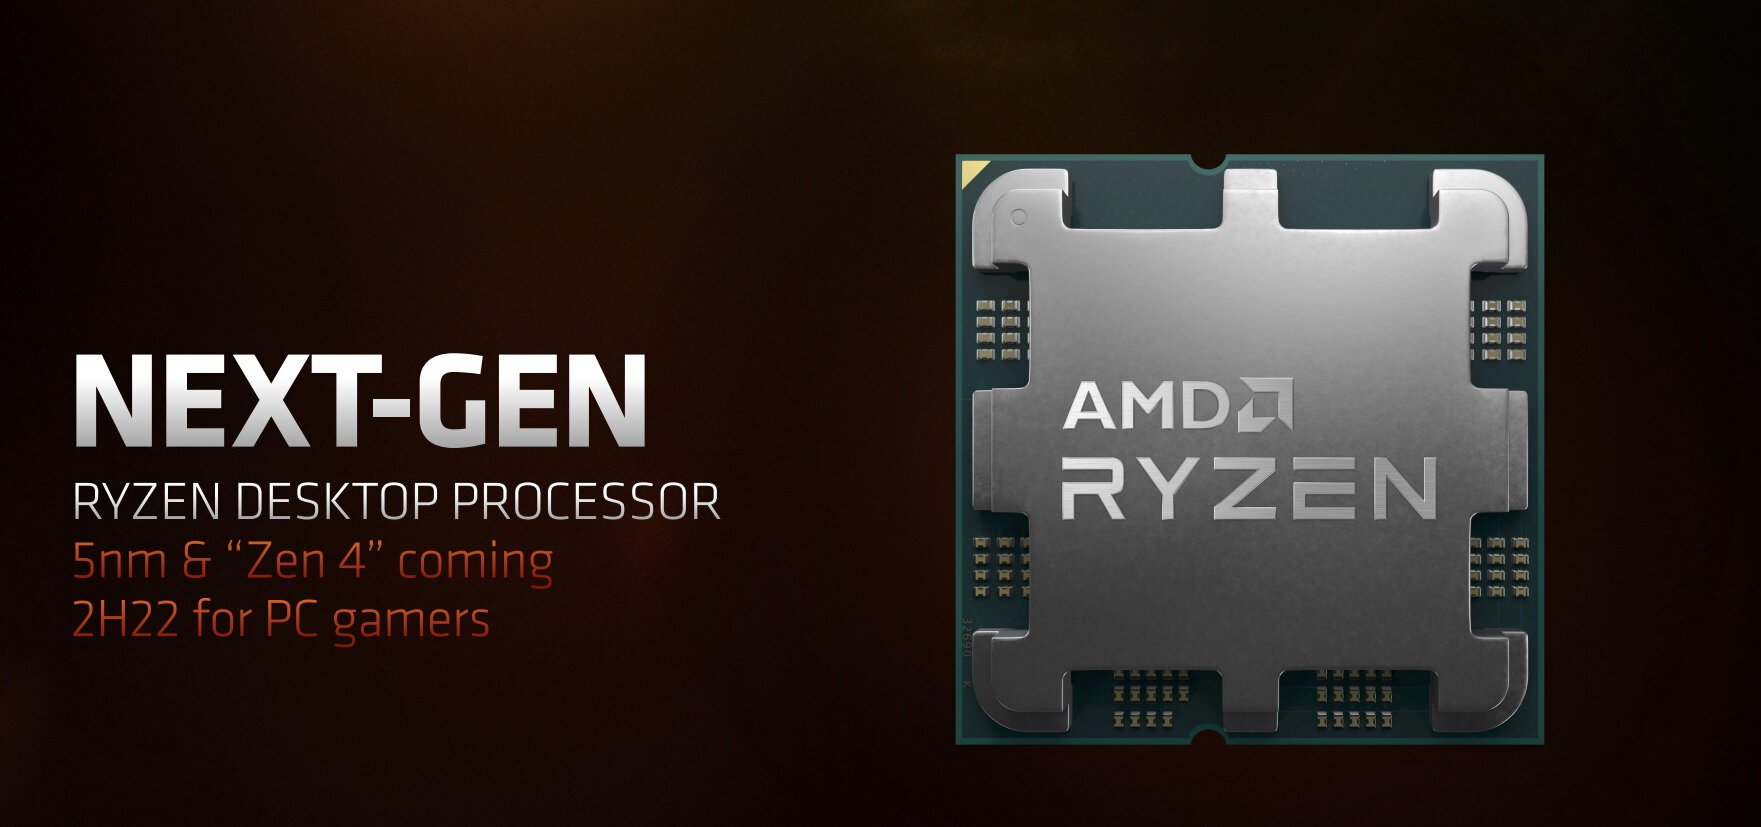 AMD анонсировала новейшие процессоры Ryzen 7000 на архитектуре Zen 4 и платформу AM5